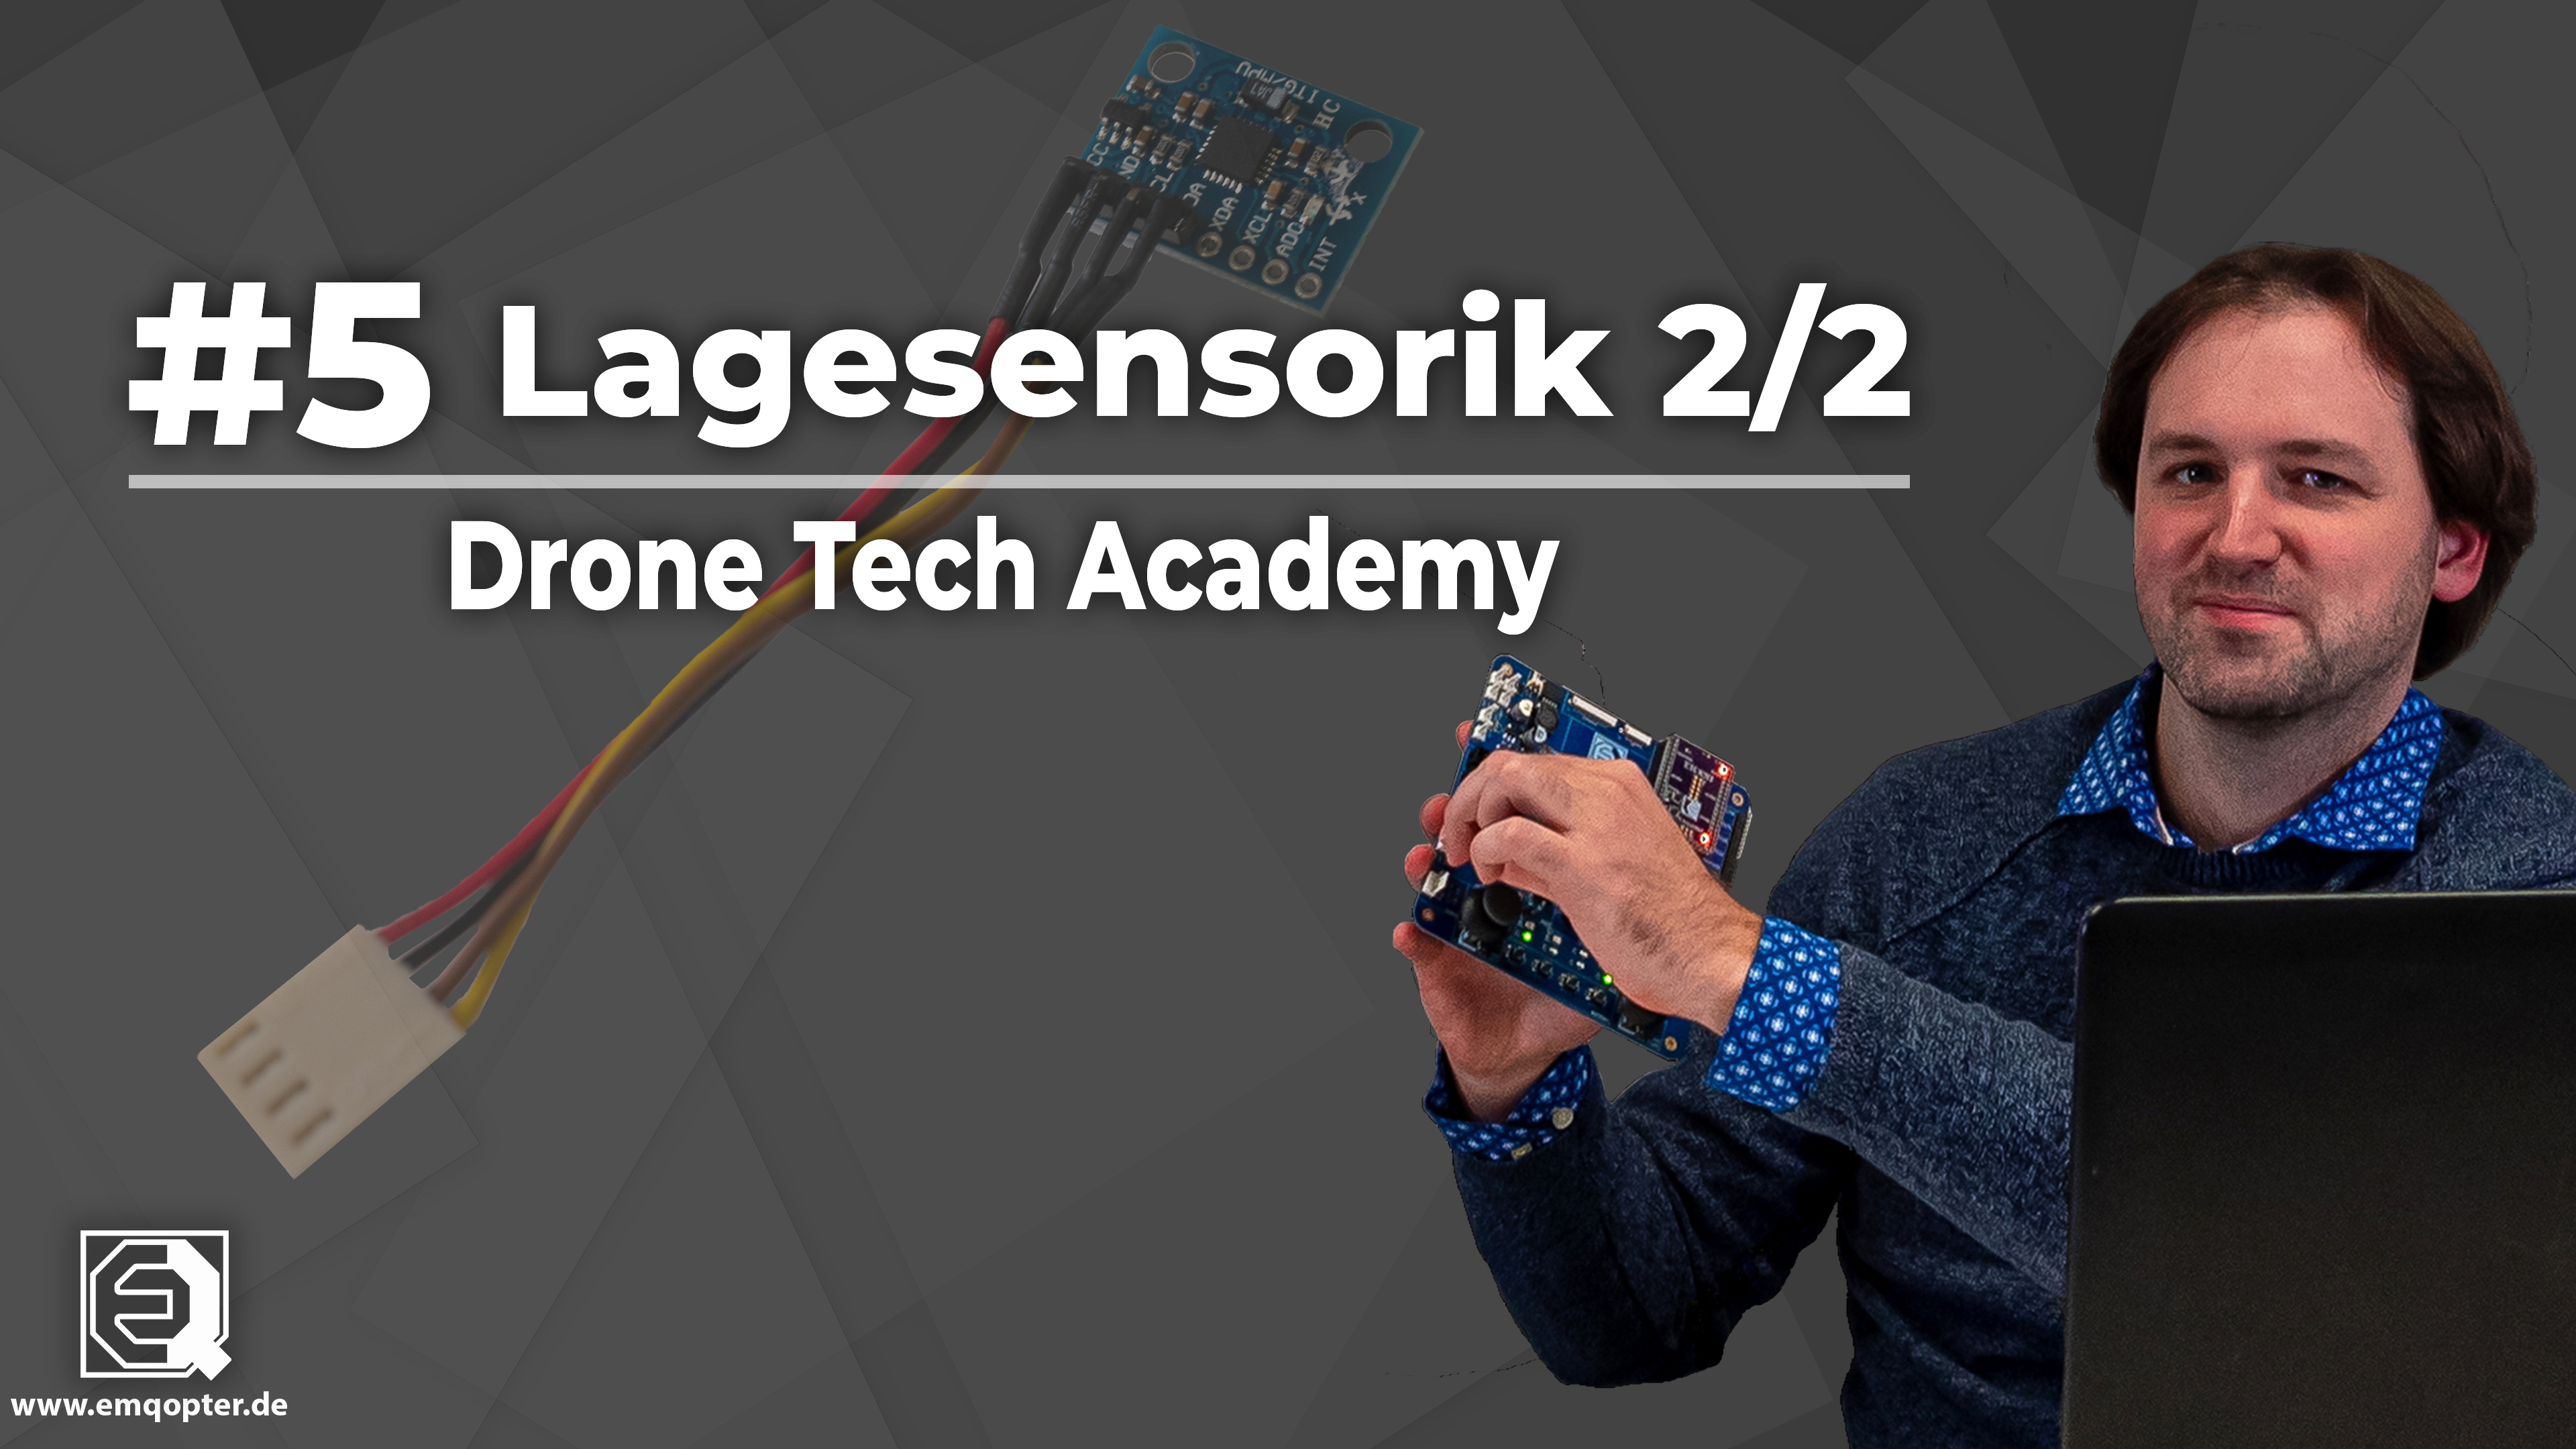 Drone Tech Academy: # 5 Lagesensorik - Treiberprogrammierung 2/2